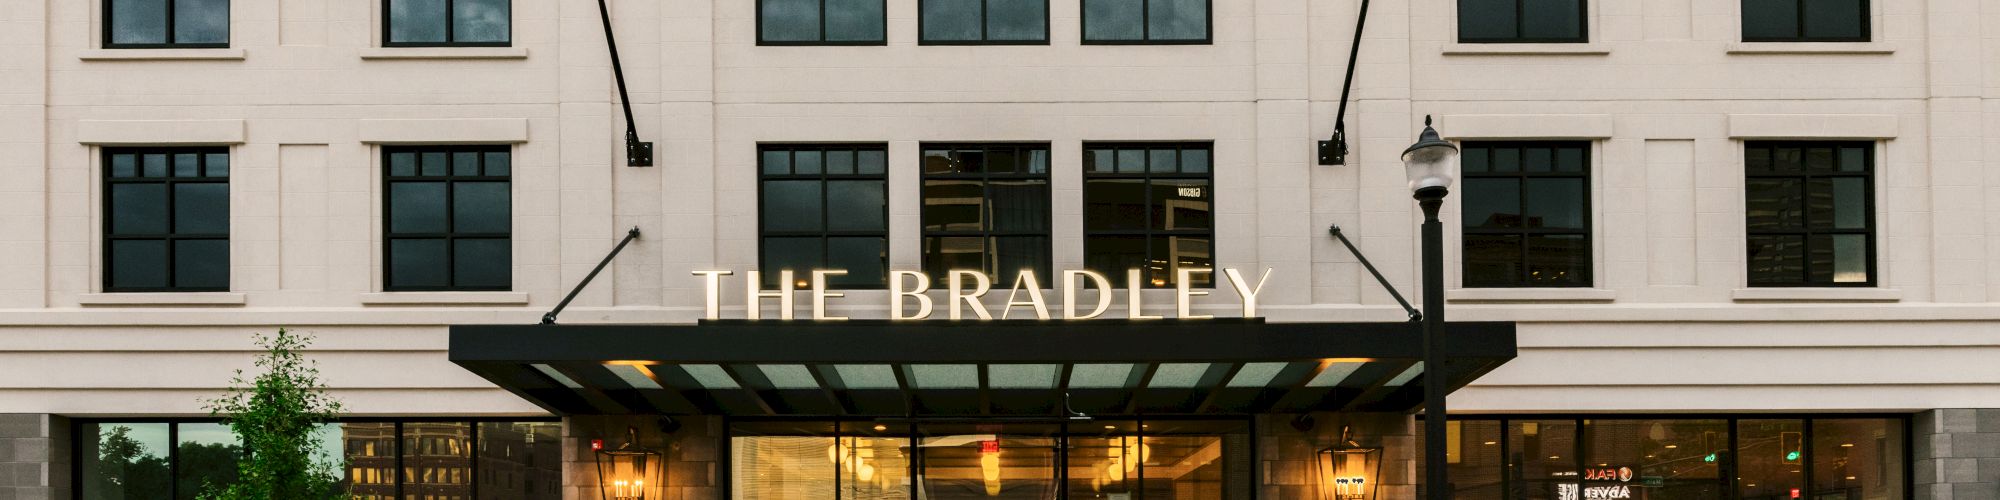 The Bradley Hotel